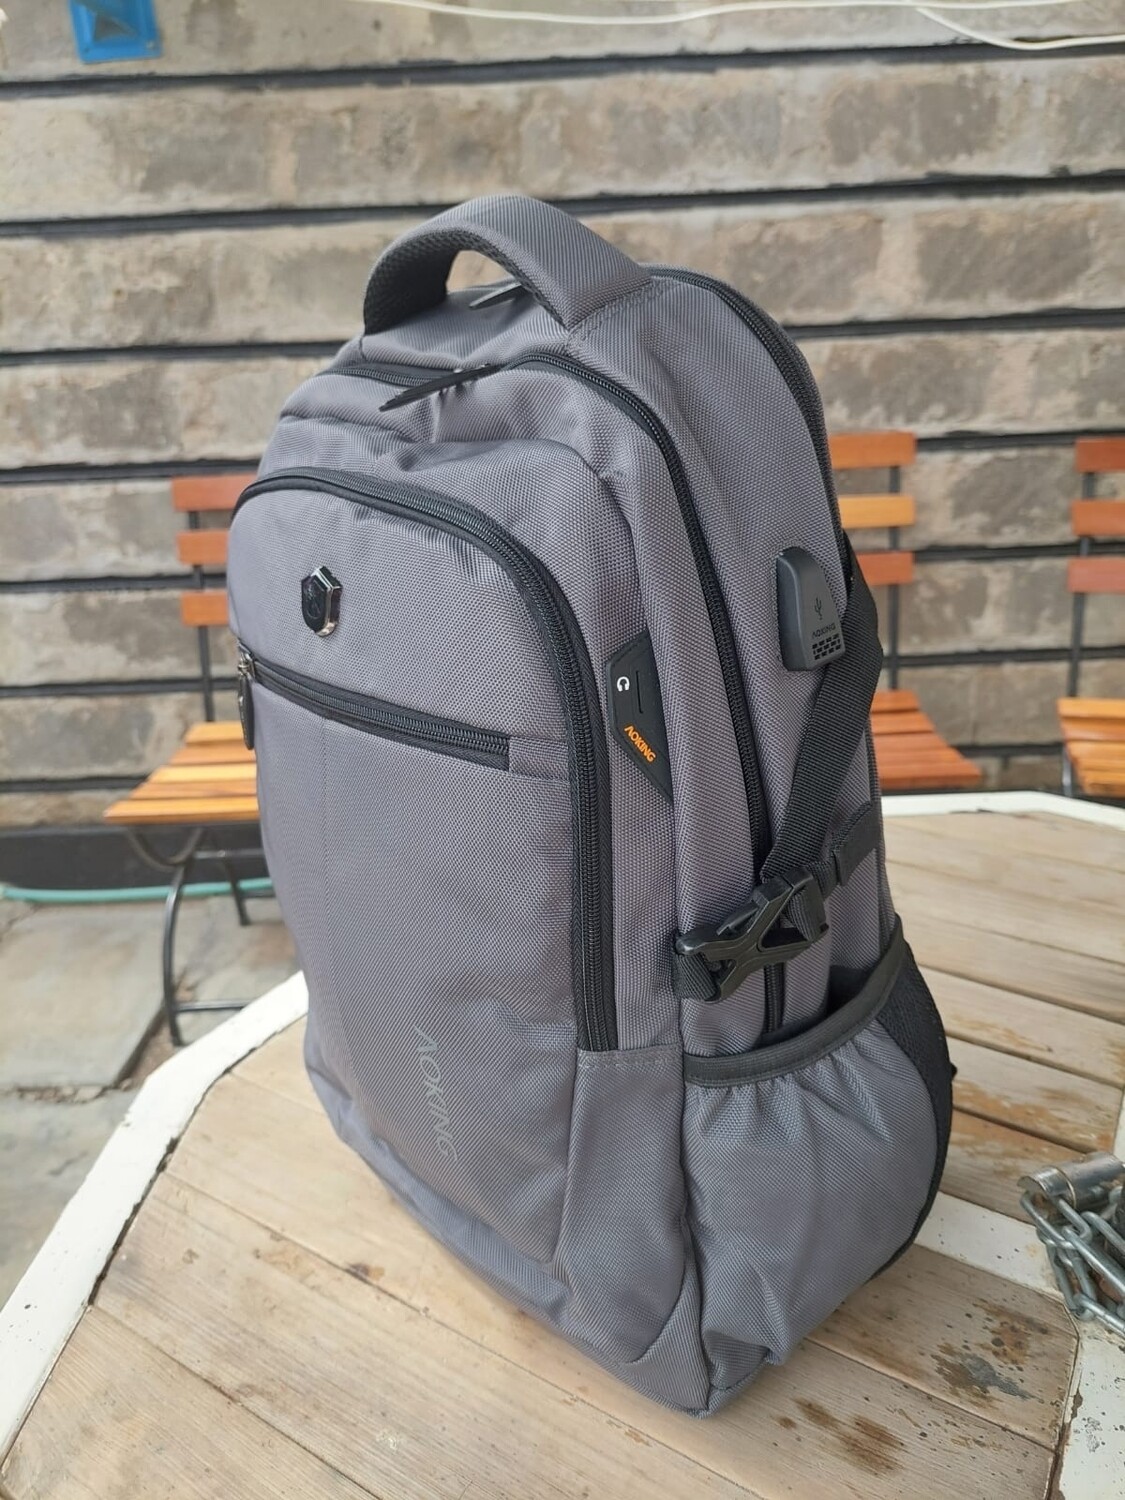 Aoking travel laptop bag, travel bag, school bag